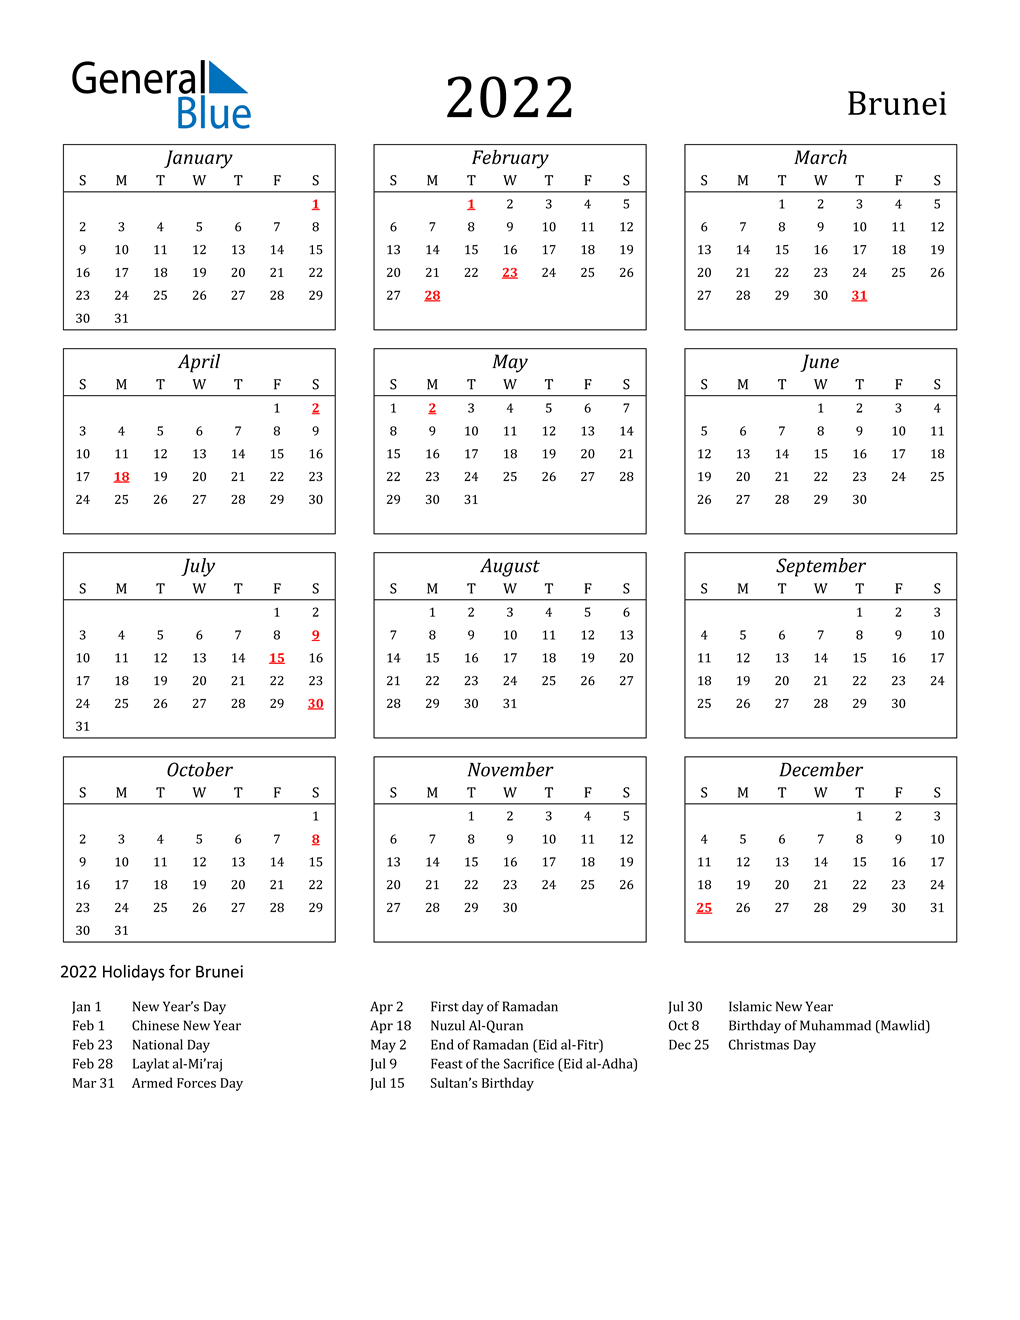 Kalendar hijrah 2022